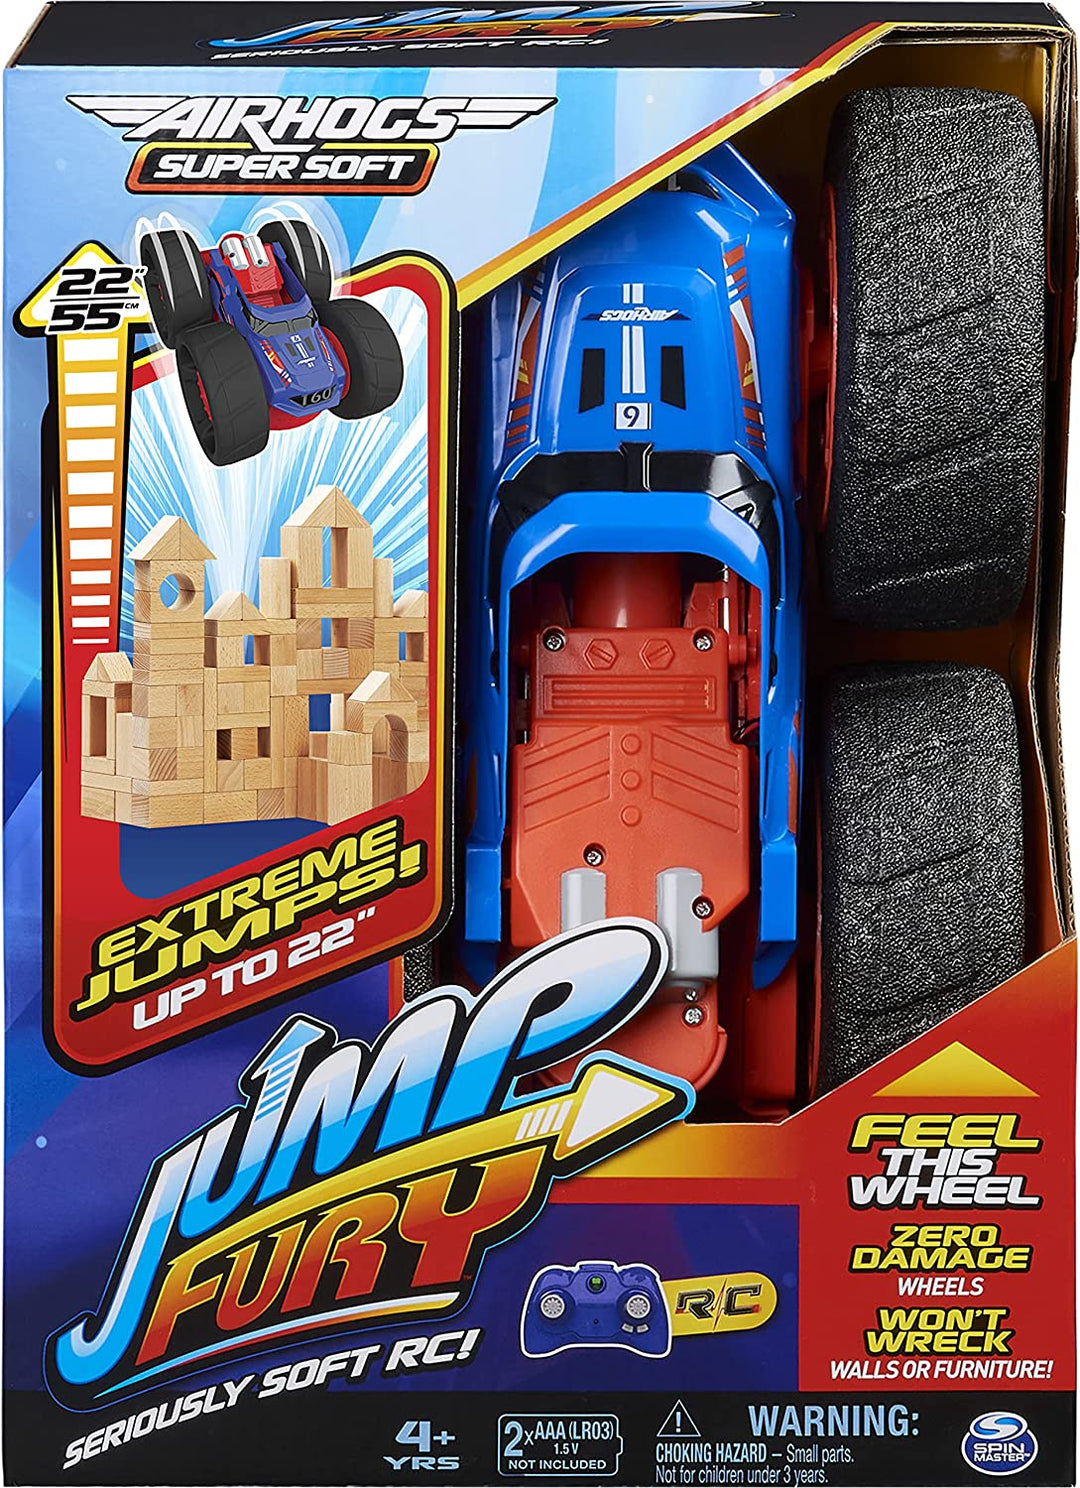 Air Hogs Super Soft, Jump Fury avec roues sans dommage, Voiture télécommandée Extreme Jumping, Jouets pour enfants